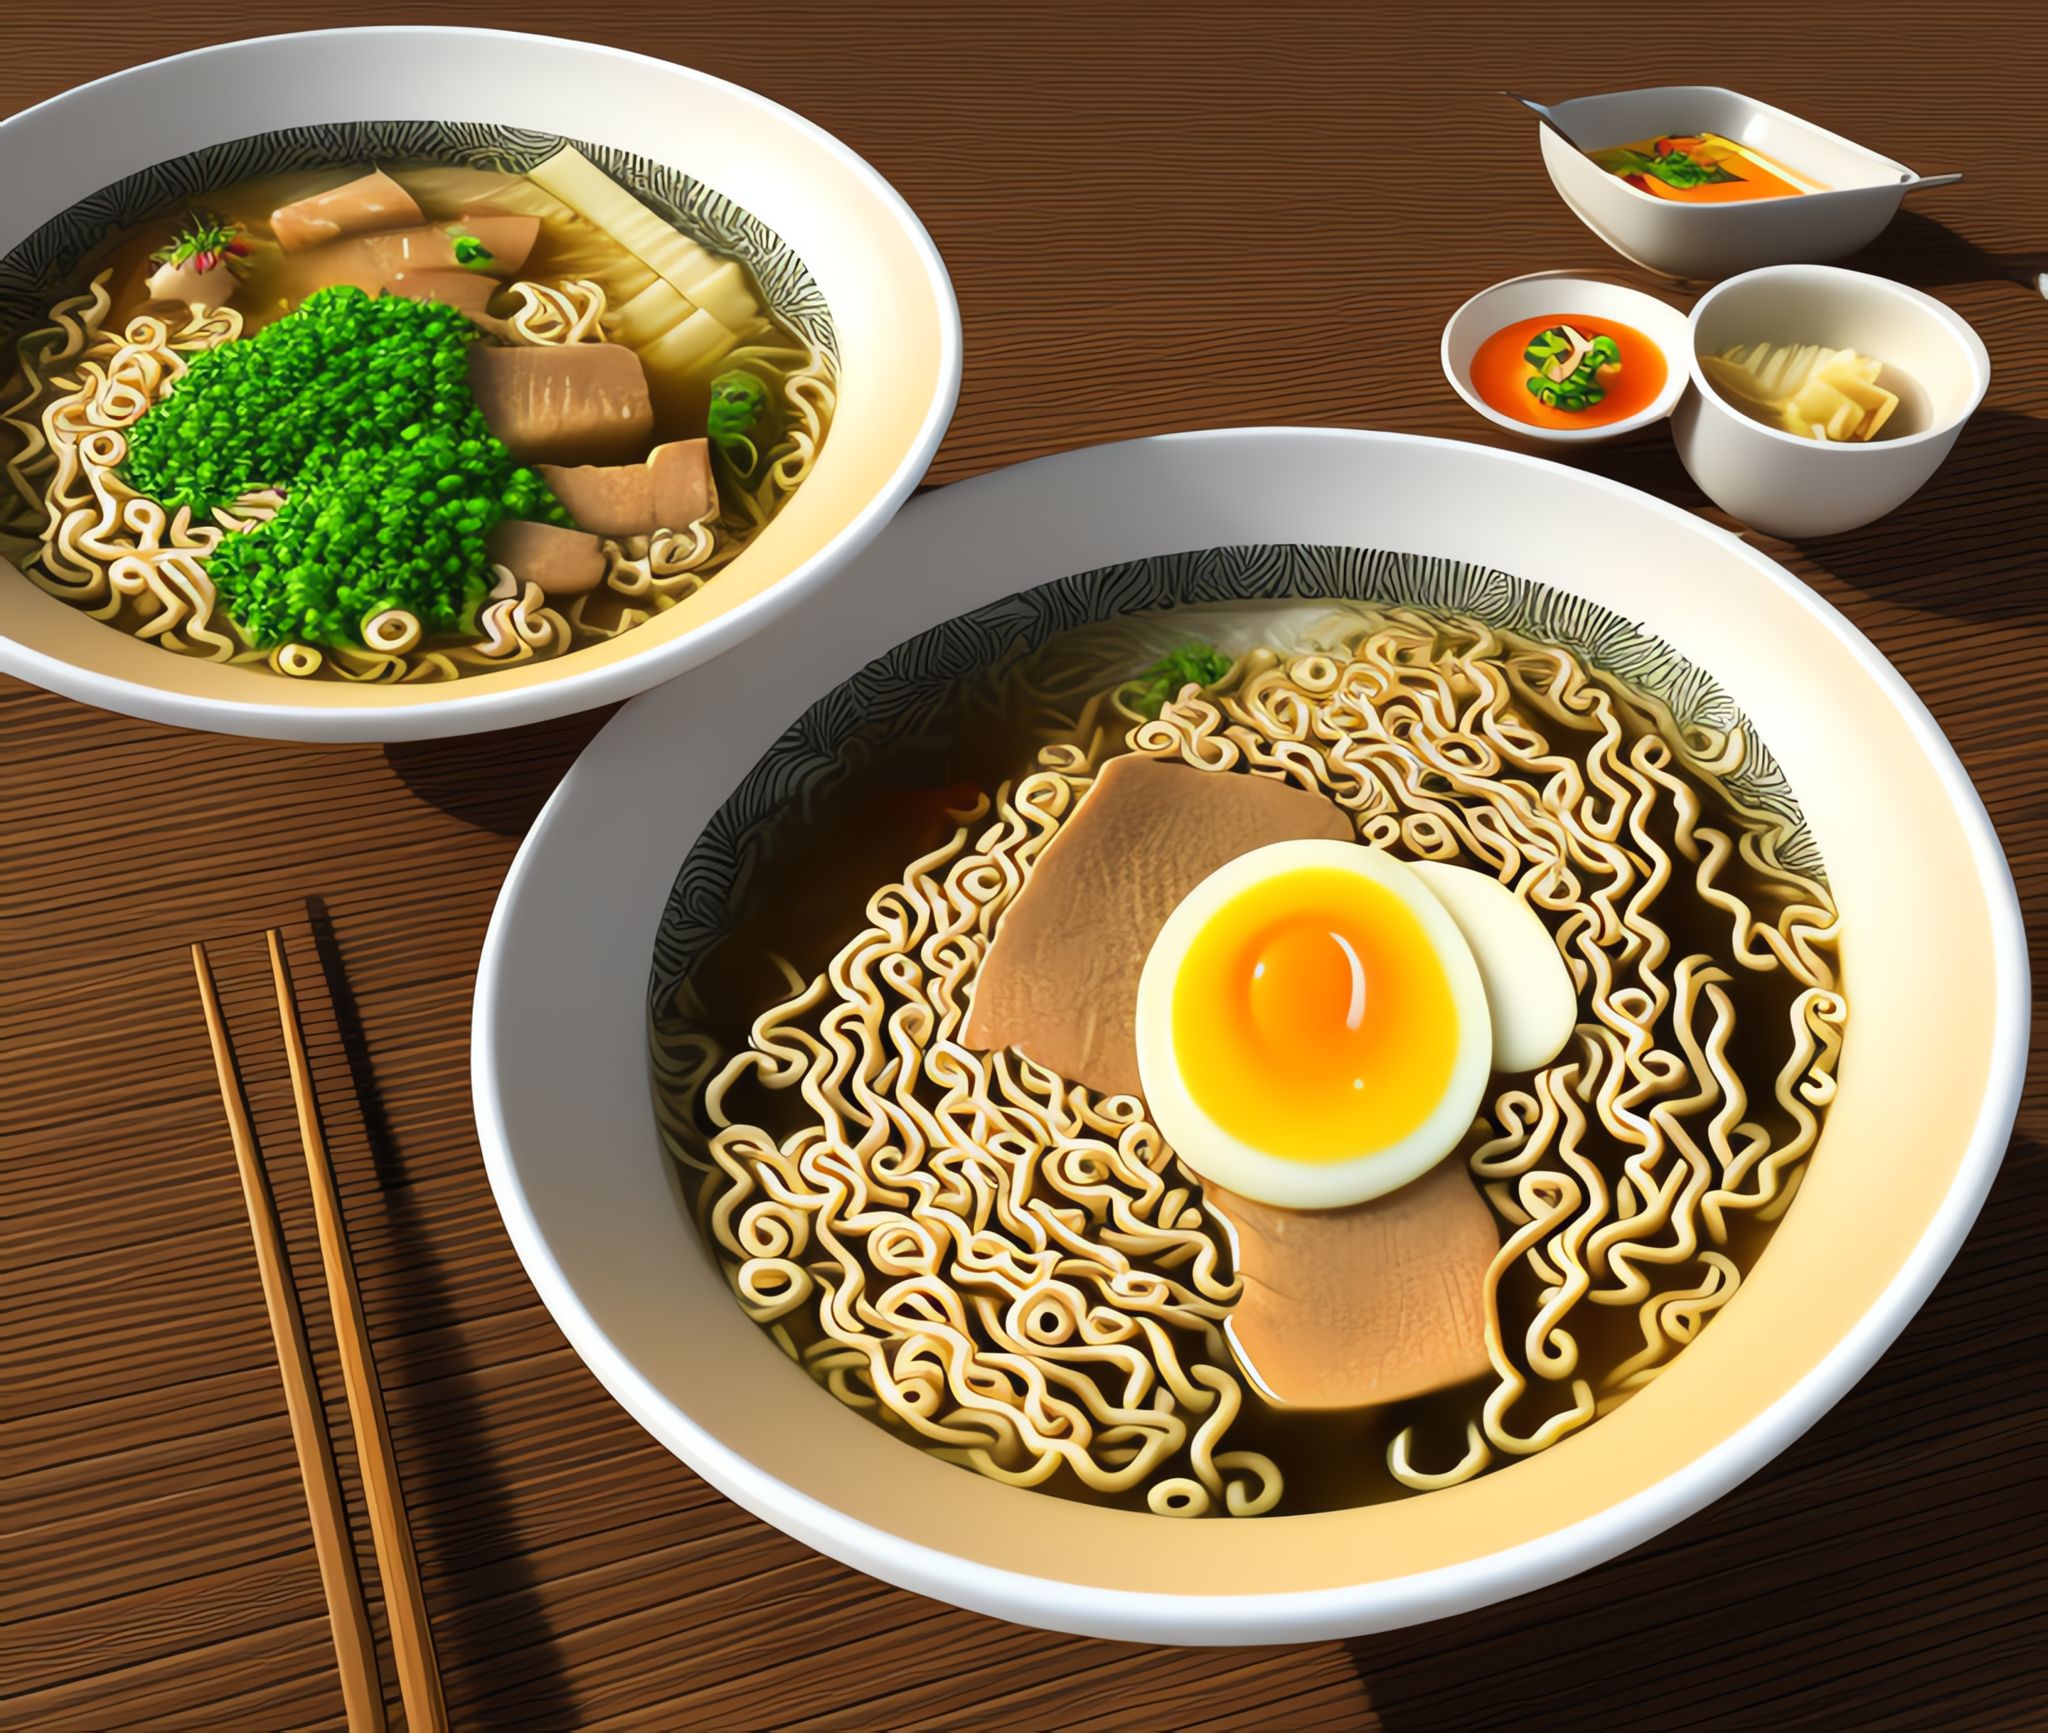 Butter-ramen-art-work-cgi-art-Japanese-food-delicious-restaurant-cooking-txr6